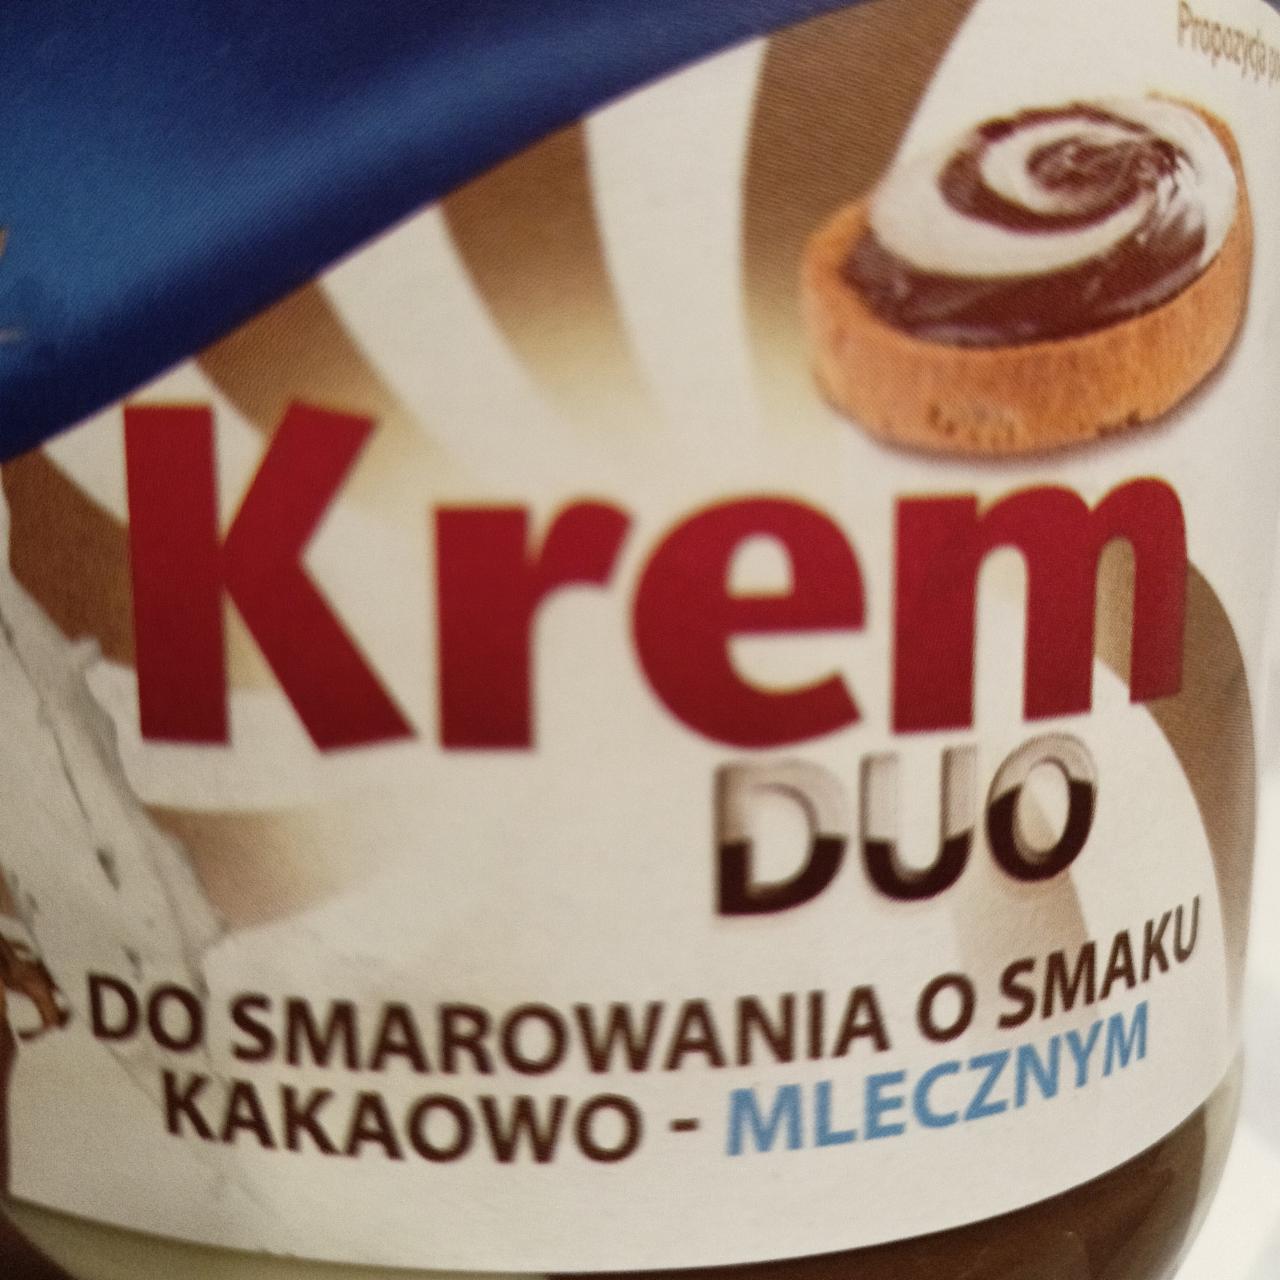 Zdjęcia - krem duo do smarowania o smaku kakaowo mlecznym Deliss